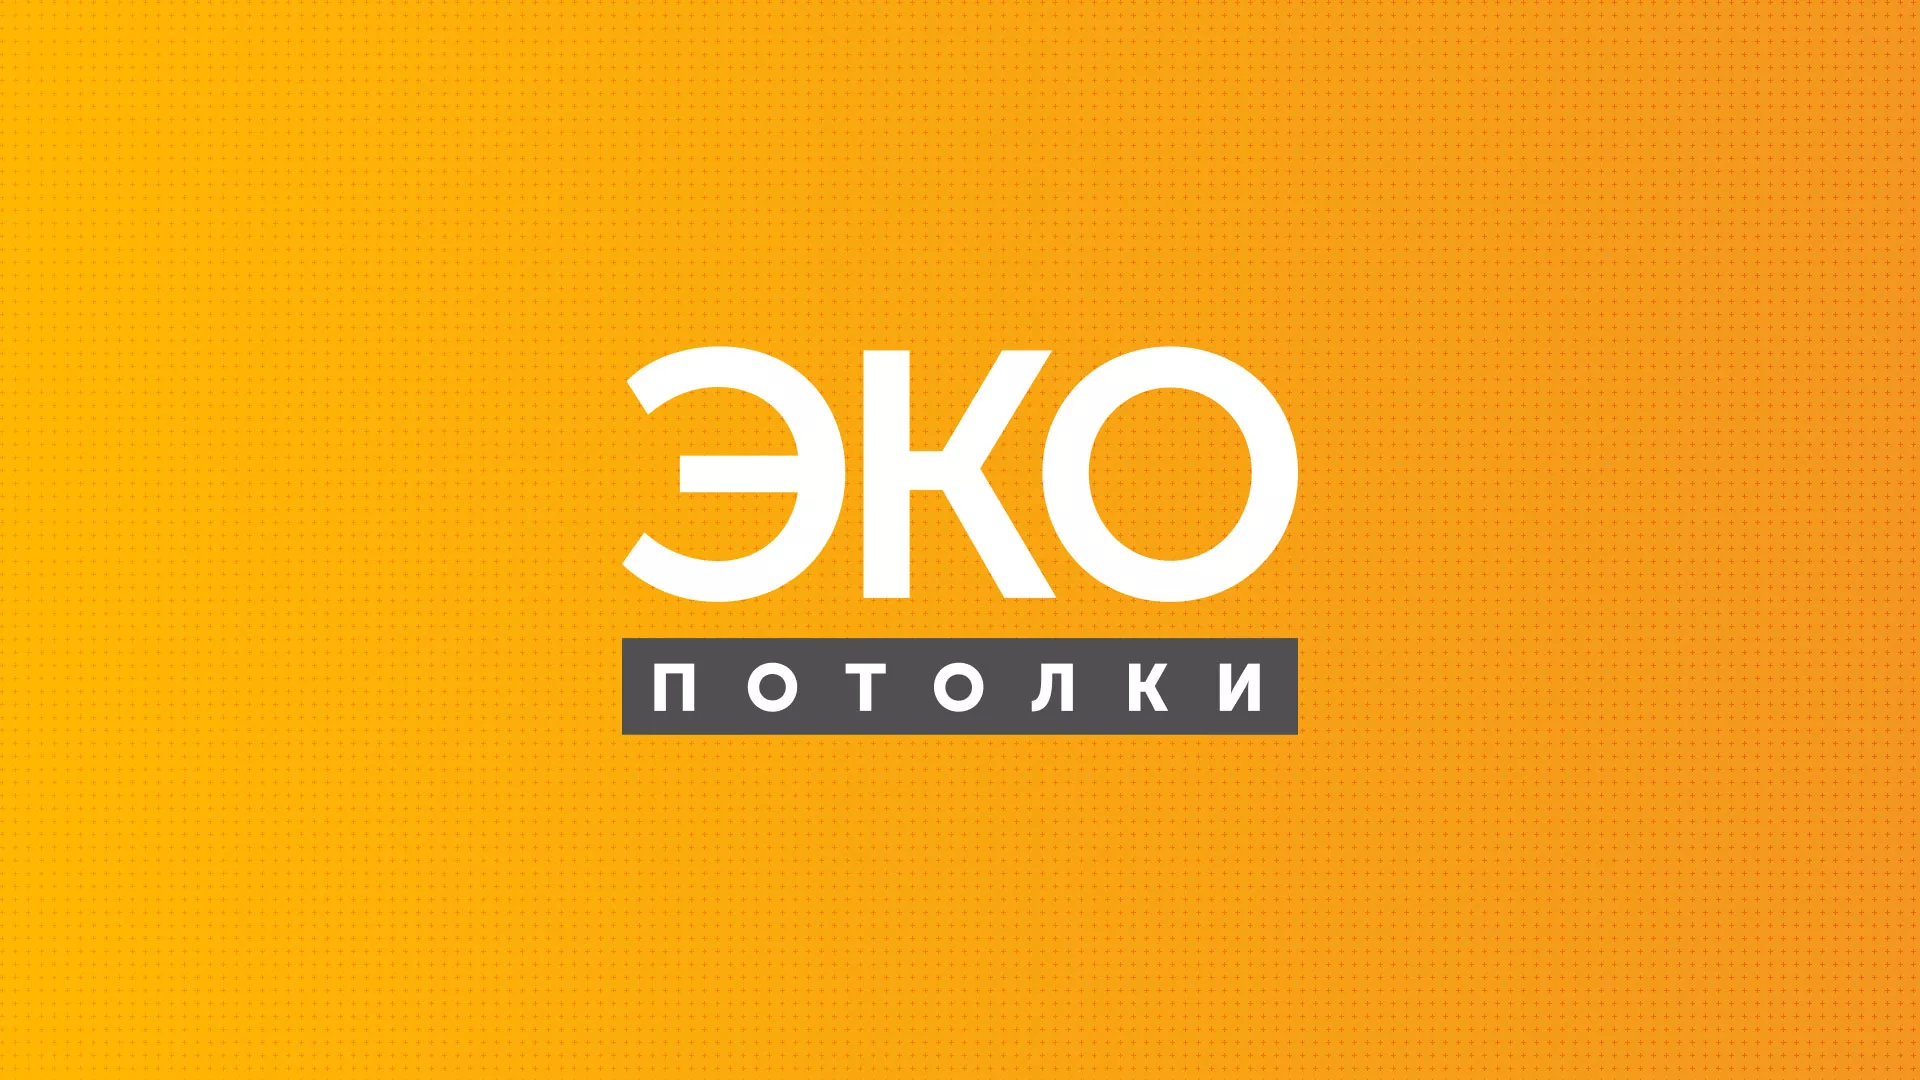 Разработка сайта по натяжным потолкам «Эко Потолки» в Магнитогорске